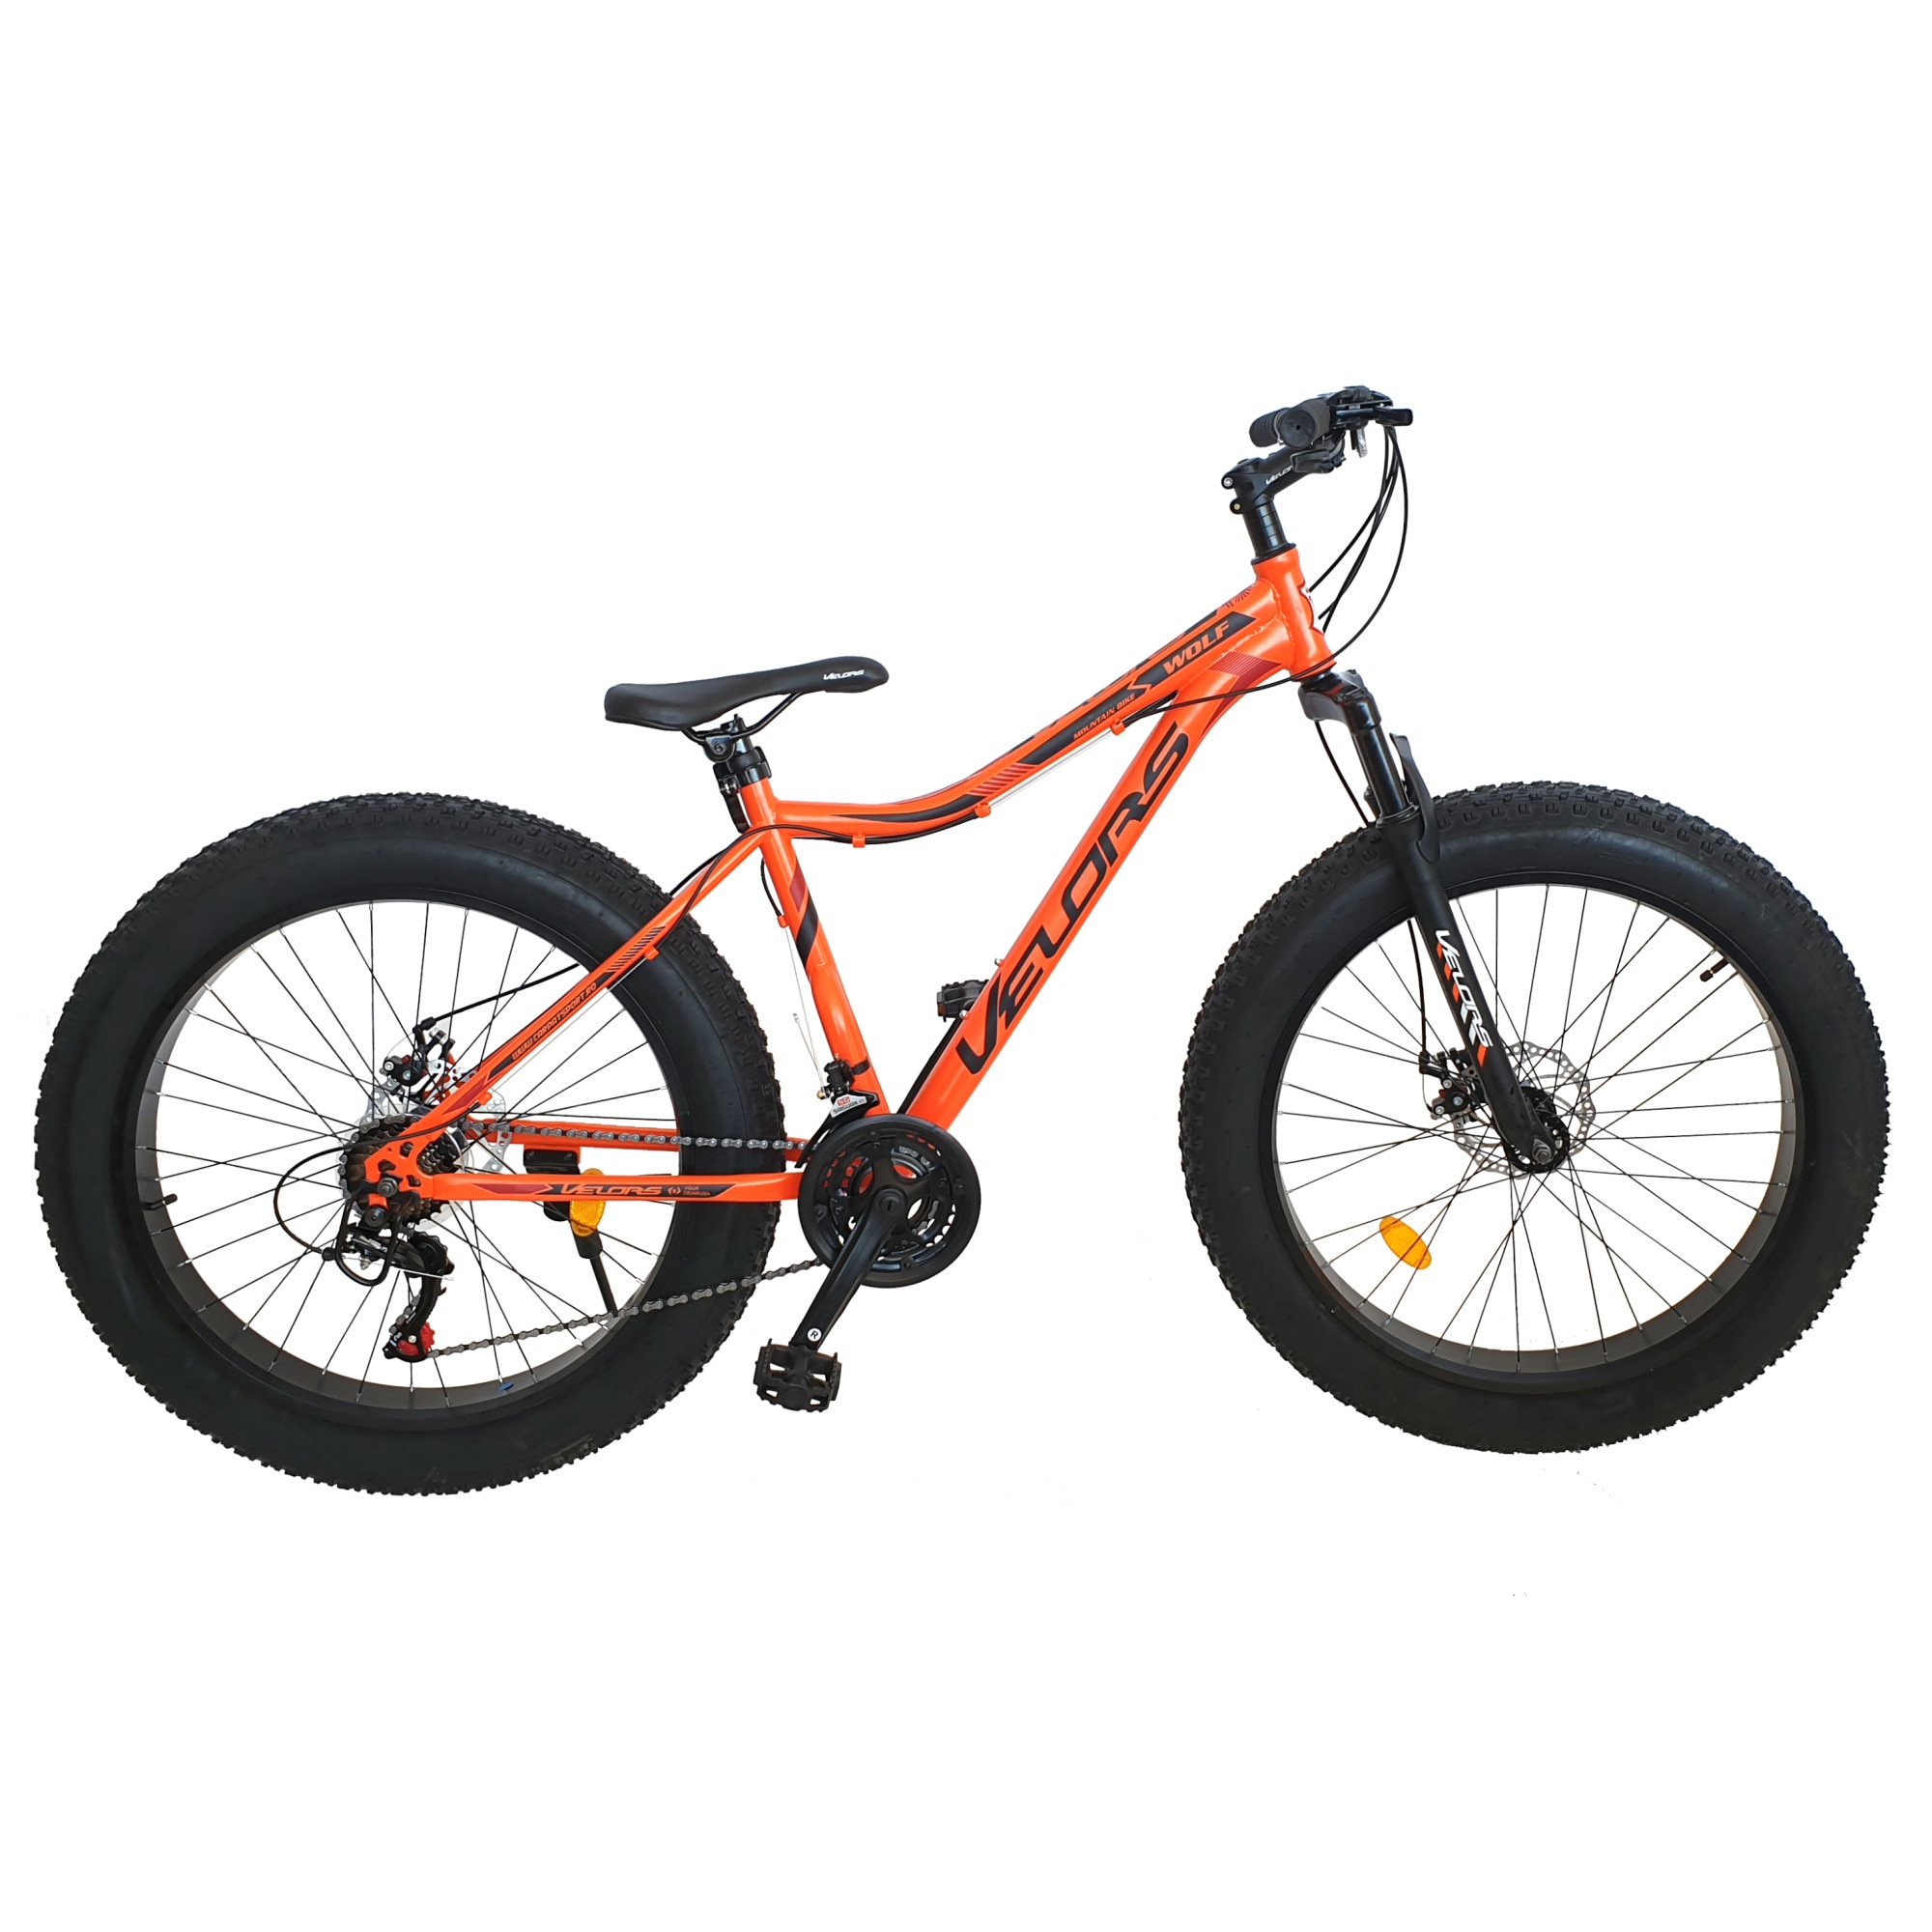 Bicicleta MTB Fat Bike JSX2605D, brand Velors, roata 26 inch, MTB, frana Disc fata/spate, echipare Shimano, Viteze, marime M, portocaliu cu negru - eMAG.ro